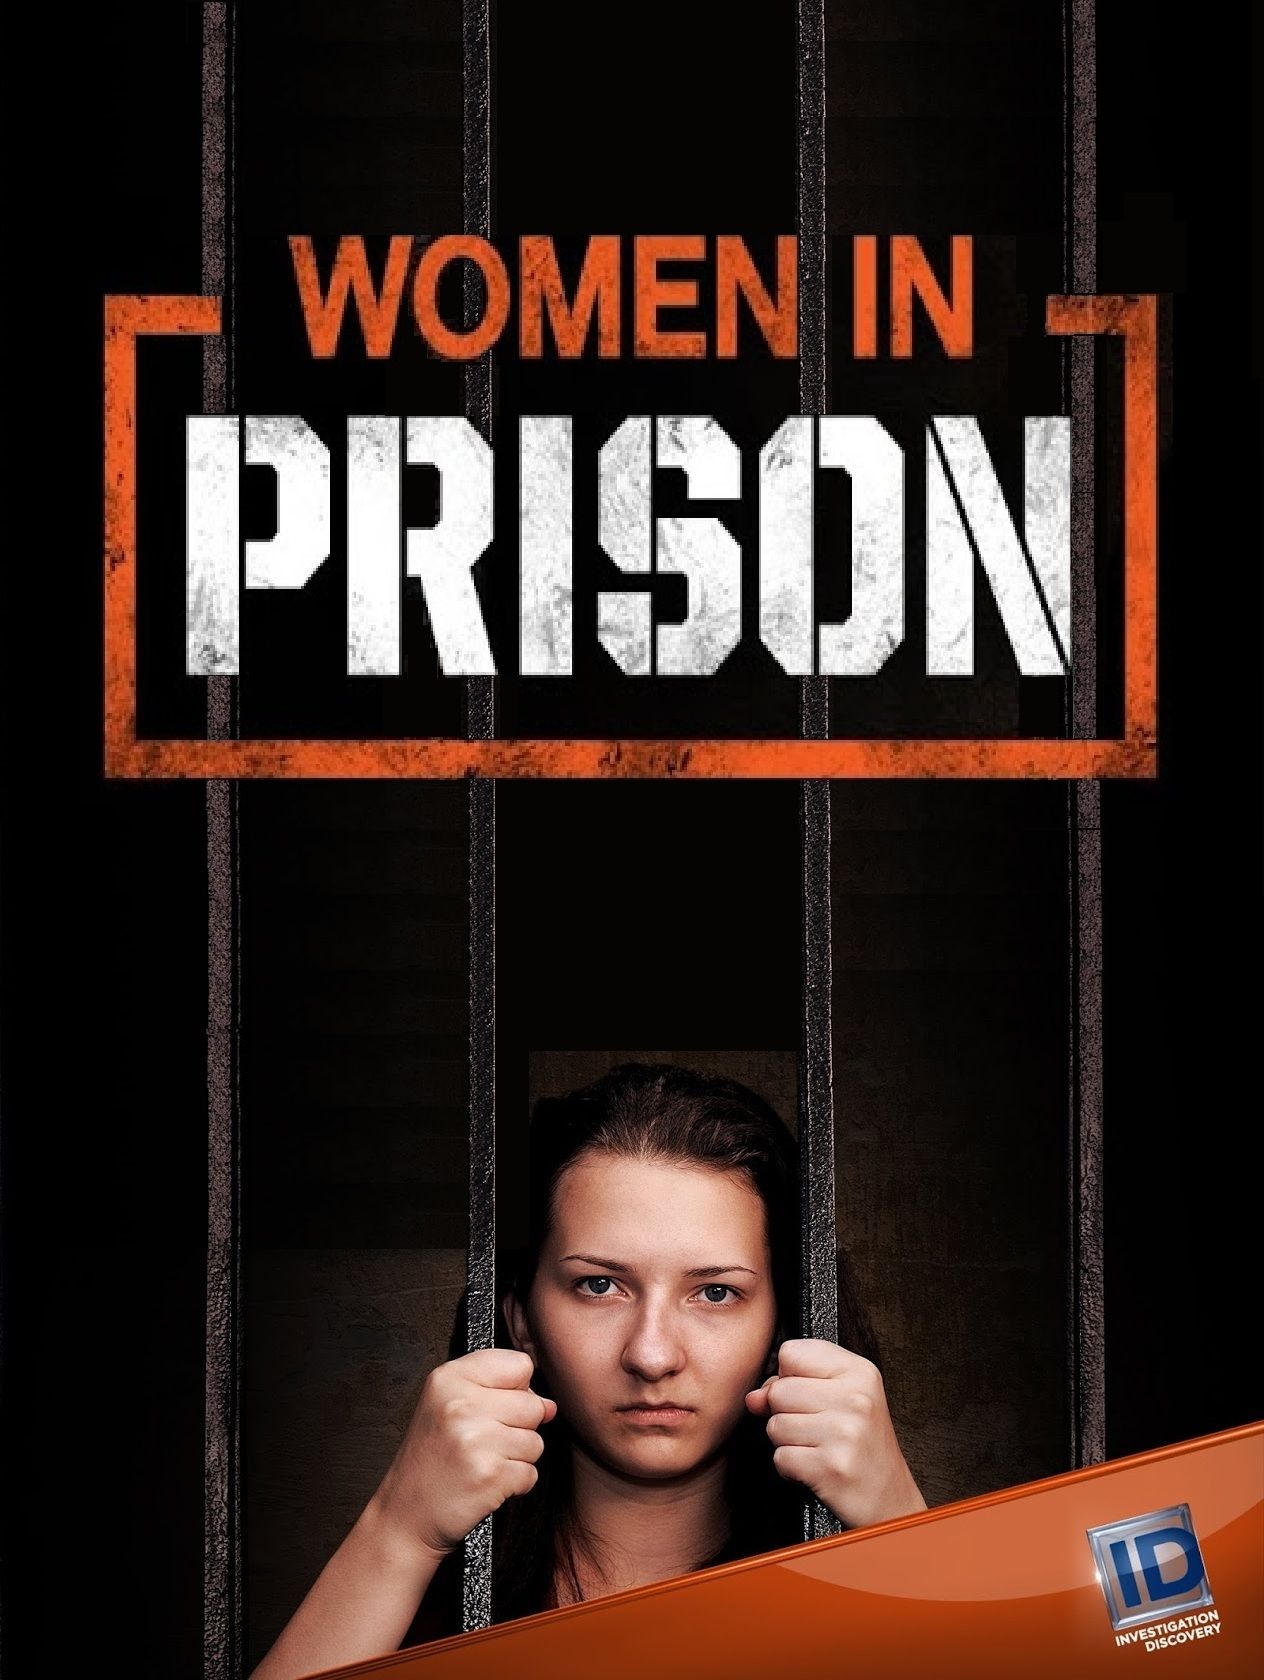 Women in prison. Вумен присон. Female Tonkin Karryn's Prison.